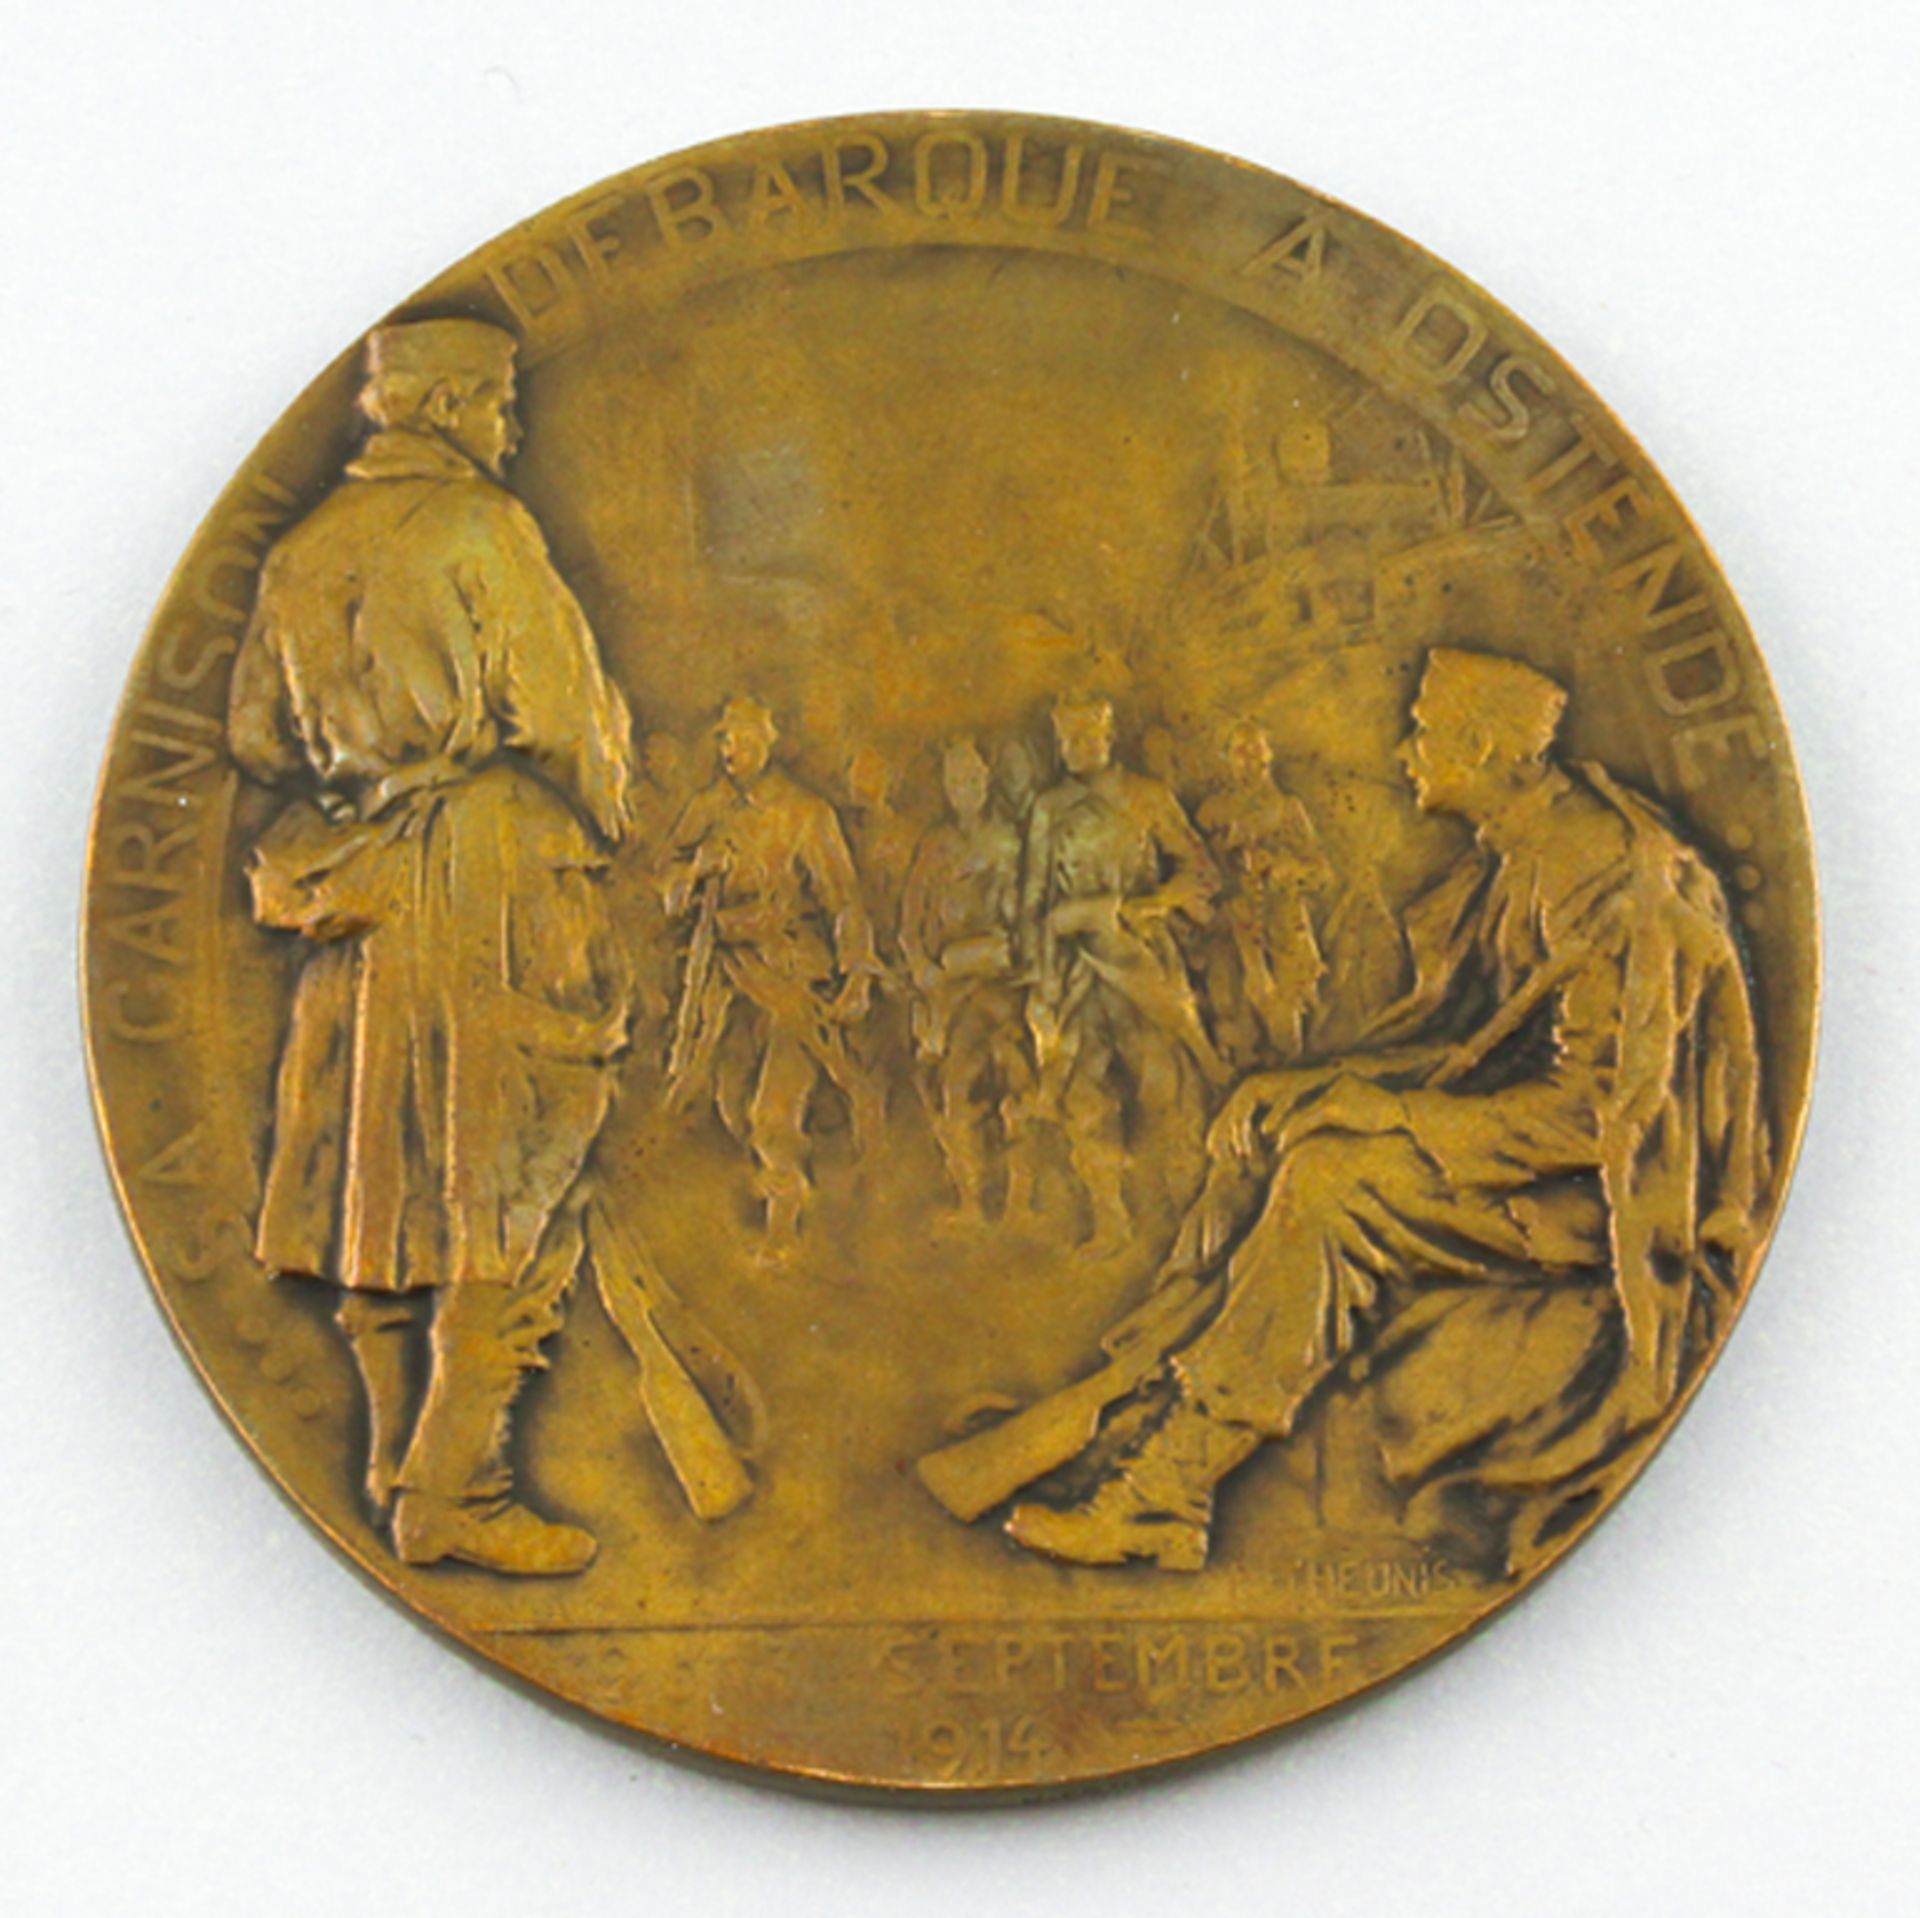 Theunis, Pierre (1883 Antwerpen - Schaarbeck 1950) Bronzemedaille "Namur 1914", beidseitig re. u.